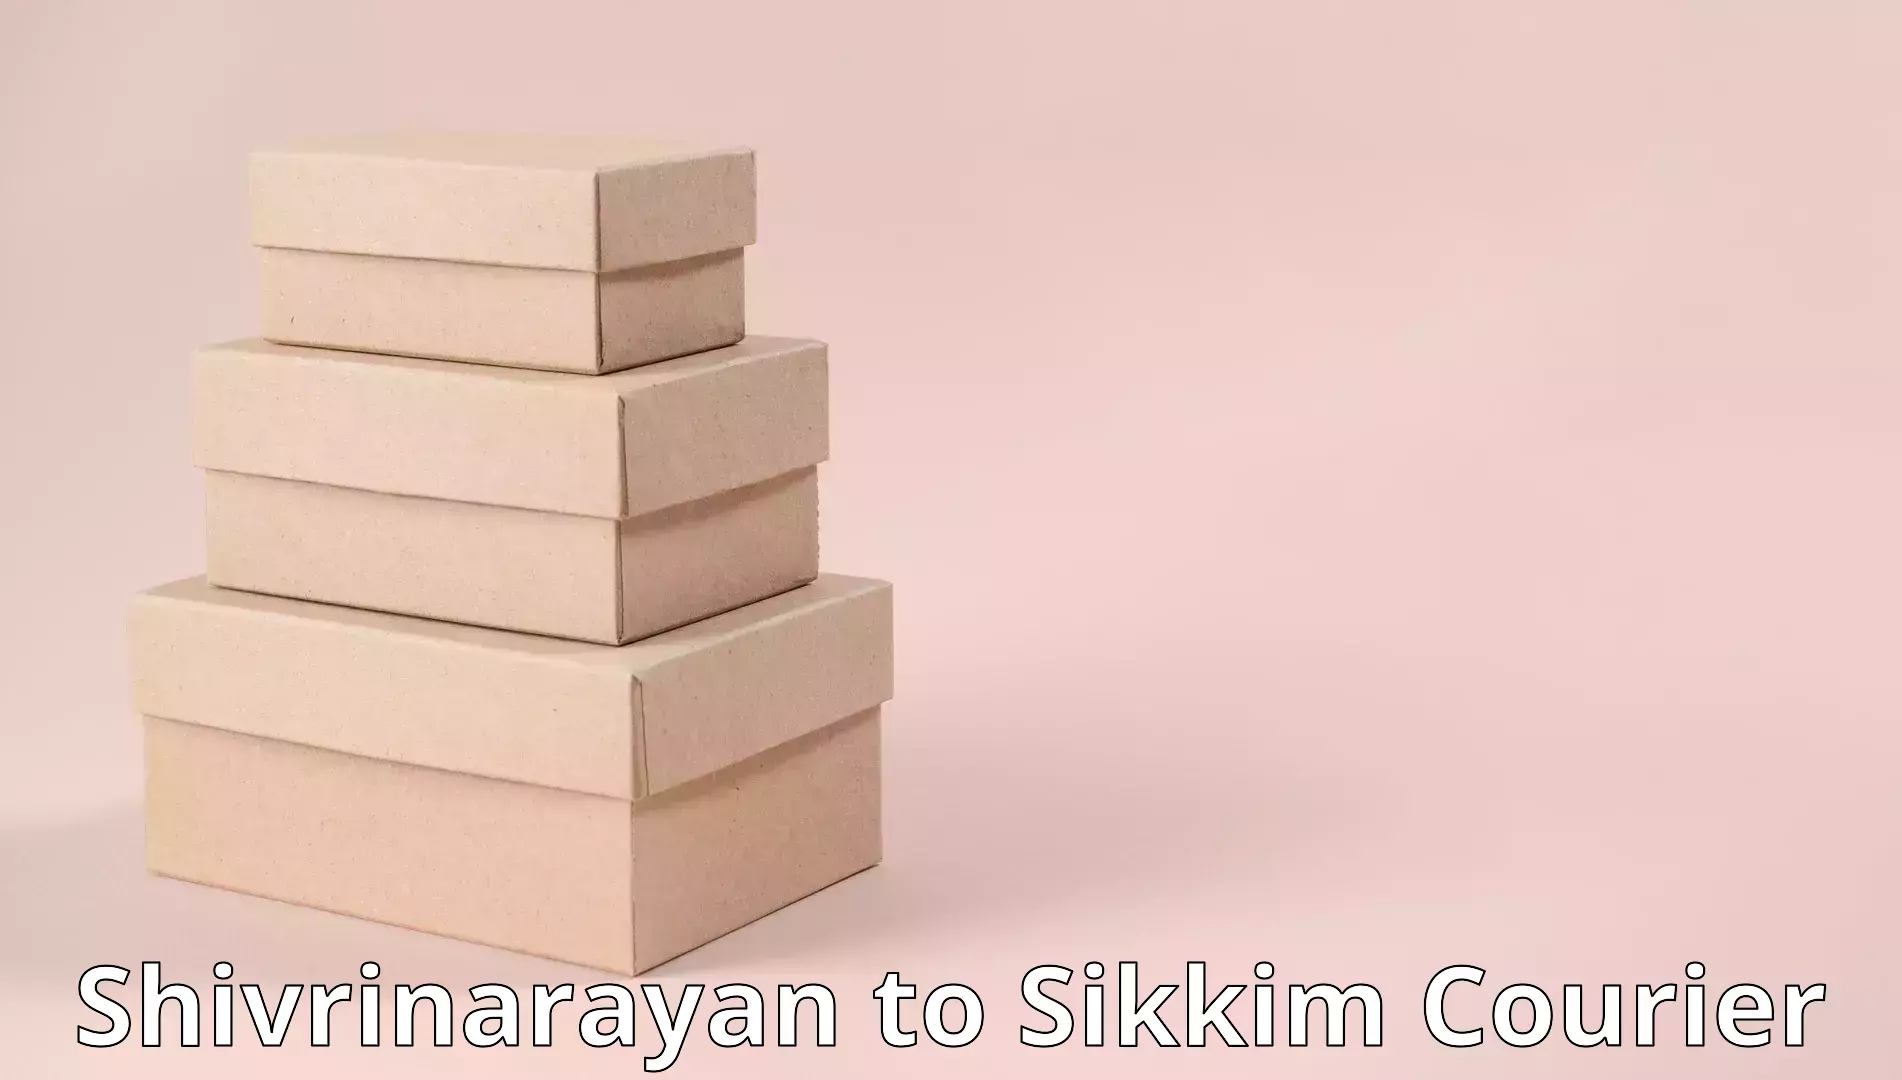 Furniture movers and packers Shivrinarayan to Mangan